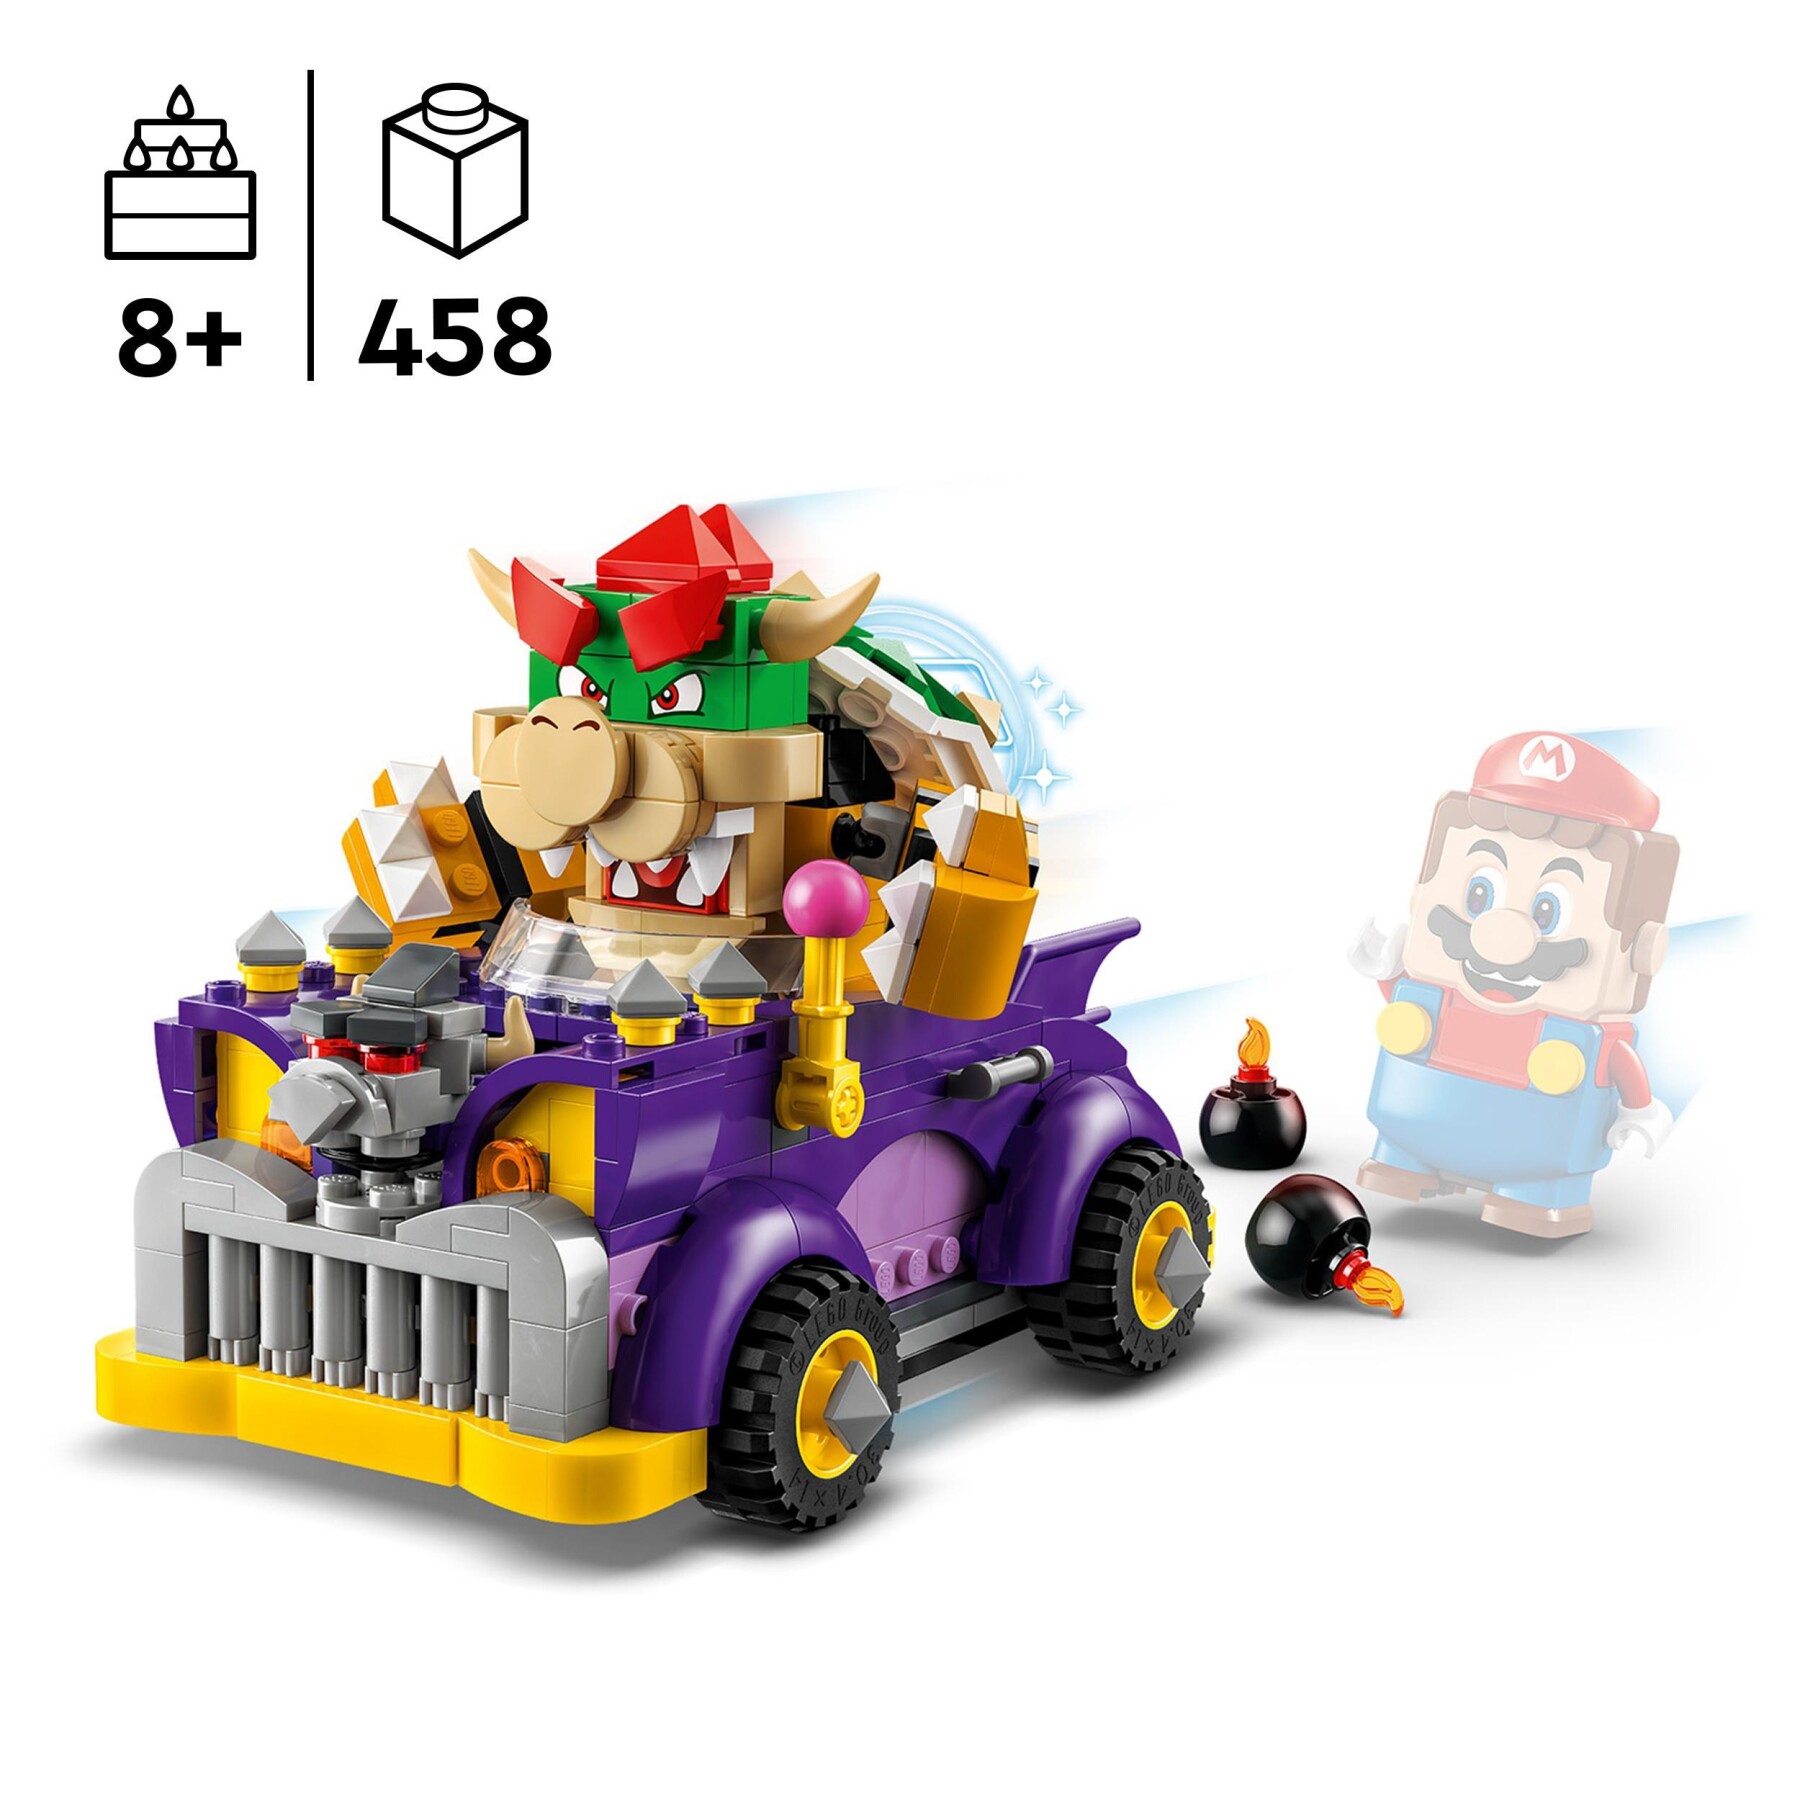 Lego super mario 71431 pack di espansione il bolide di bowser, giochi bambini 8+ anni con personaggio e macchina giocattolo - LEGO® Super Mario™, Super Mario